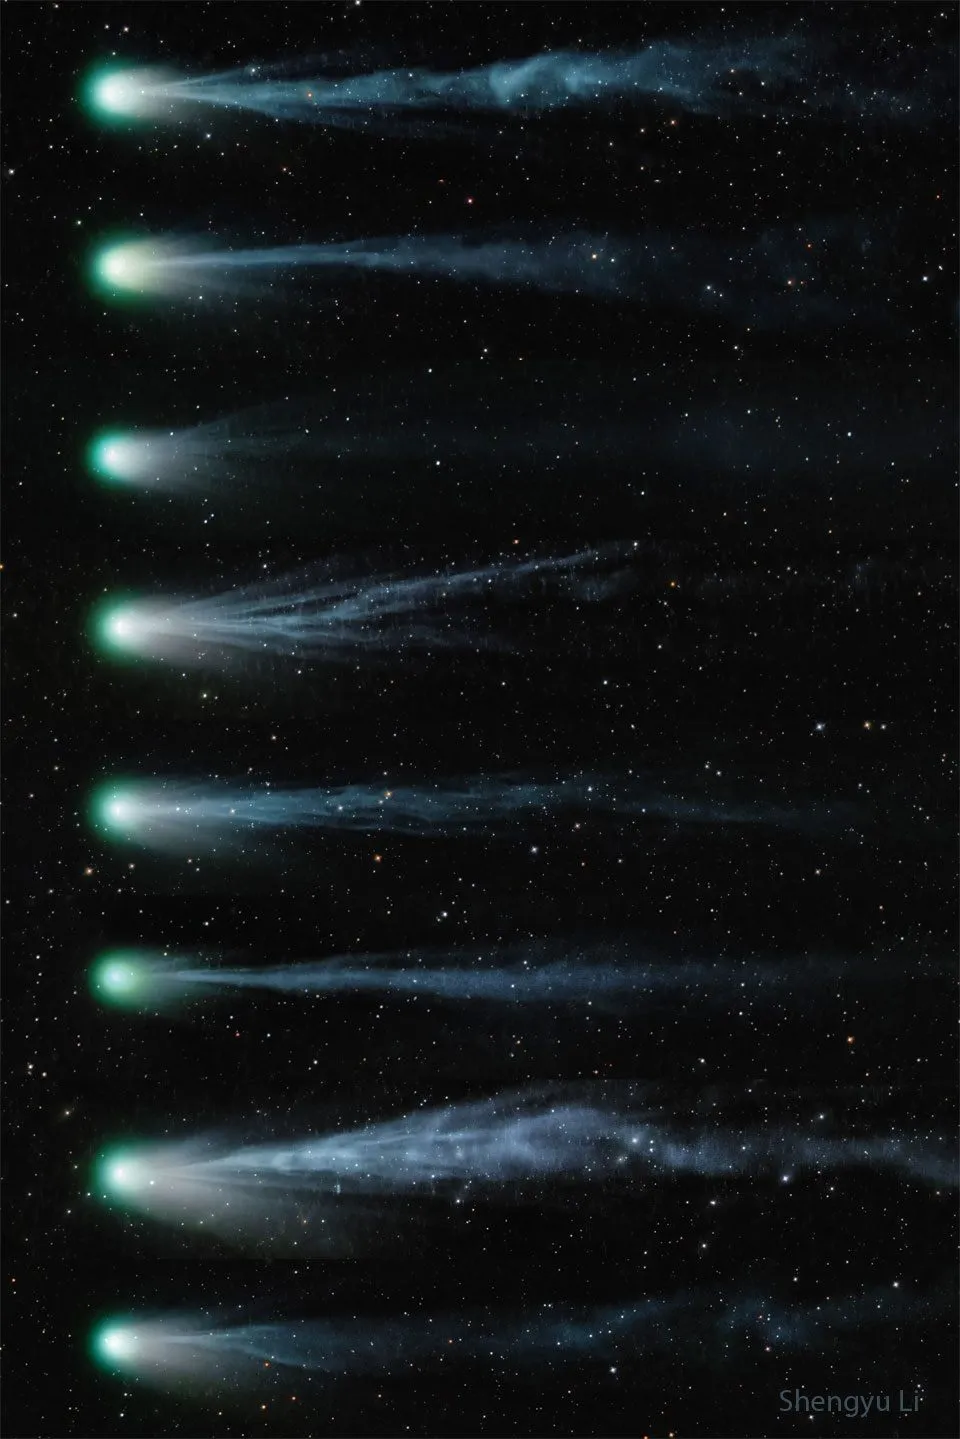 由天文摄影师Shengyu Li拍摄，庞士-布鲁克斯彗星自3月6日至14日期间彗尾外形的变化图。因彗核不定期喷出气体尘埃且不断旋转，造成庞士-布鲁克斯彗星的形状不断改变。影像来源：NASA